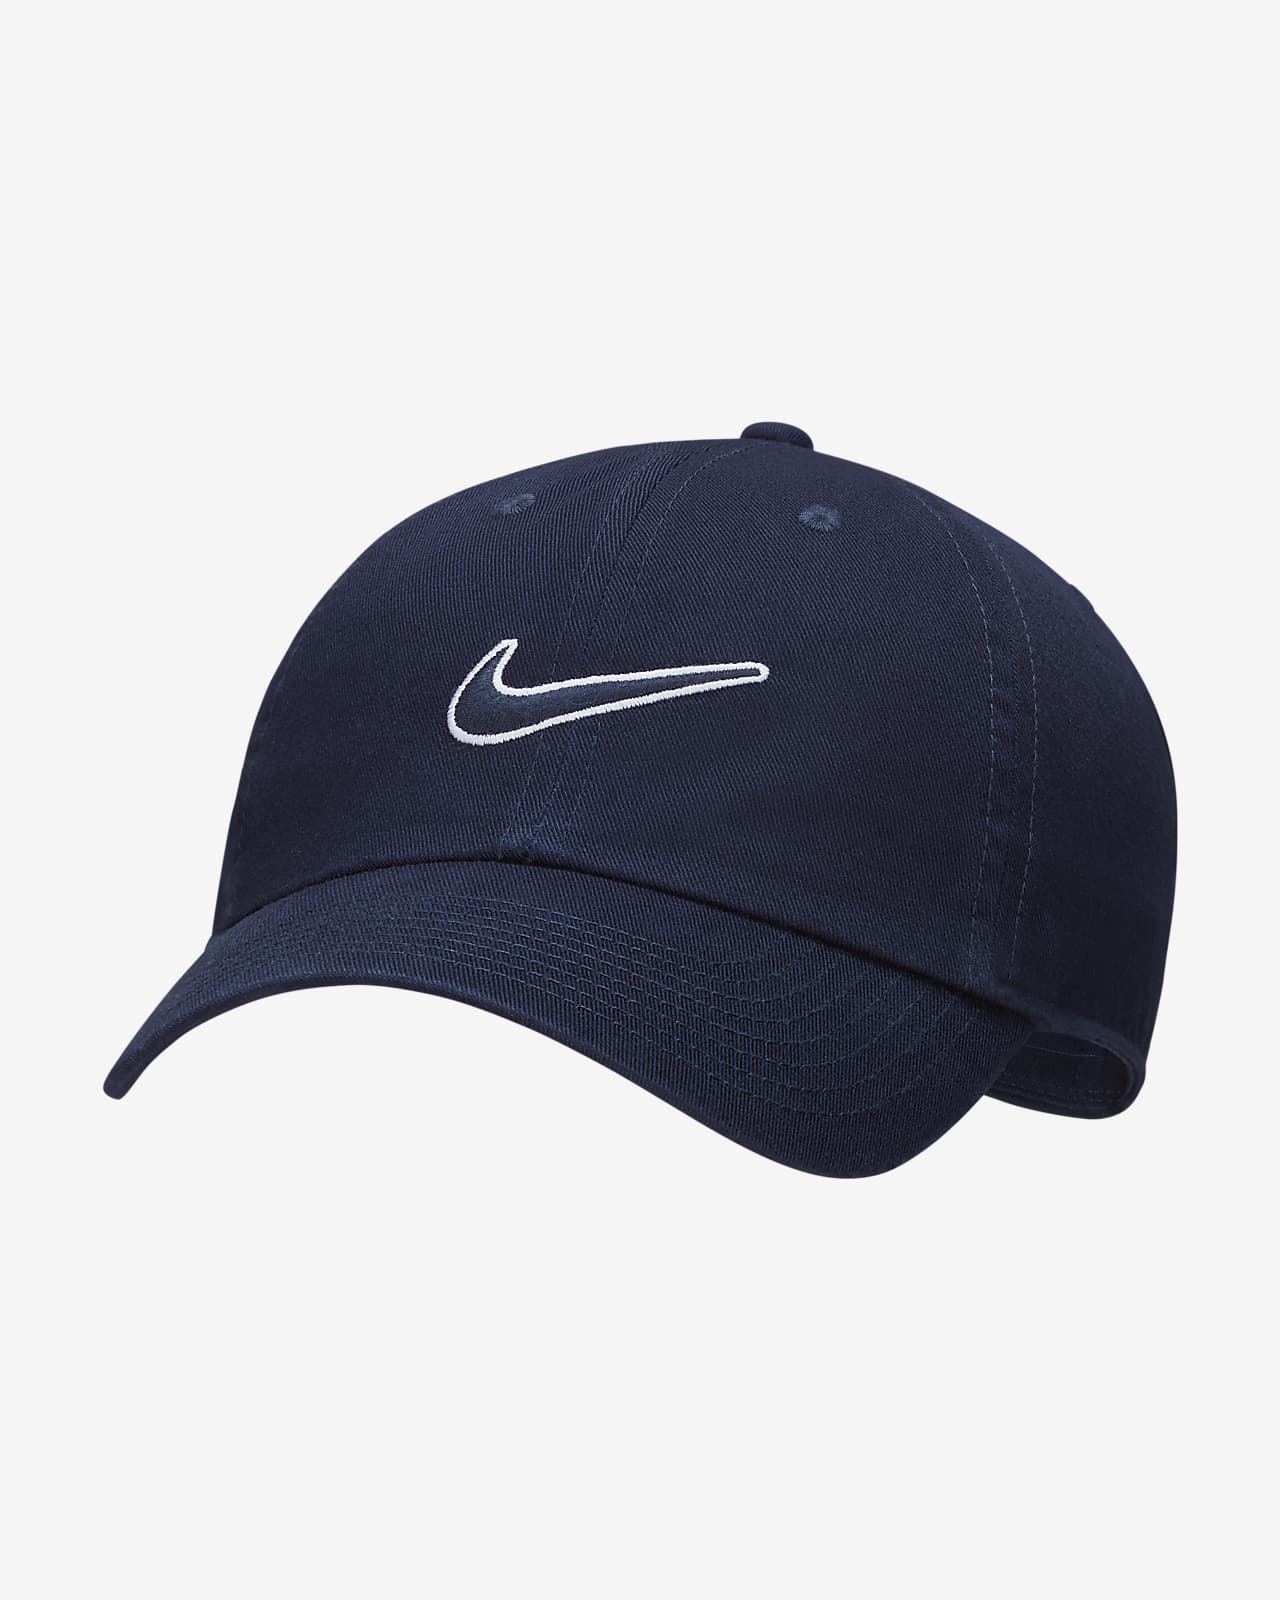 Nike Sportswear Heritage 86 可调节运动帽